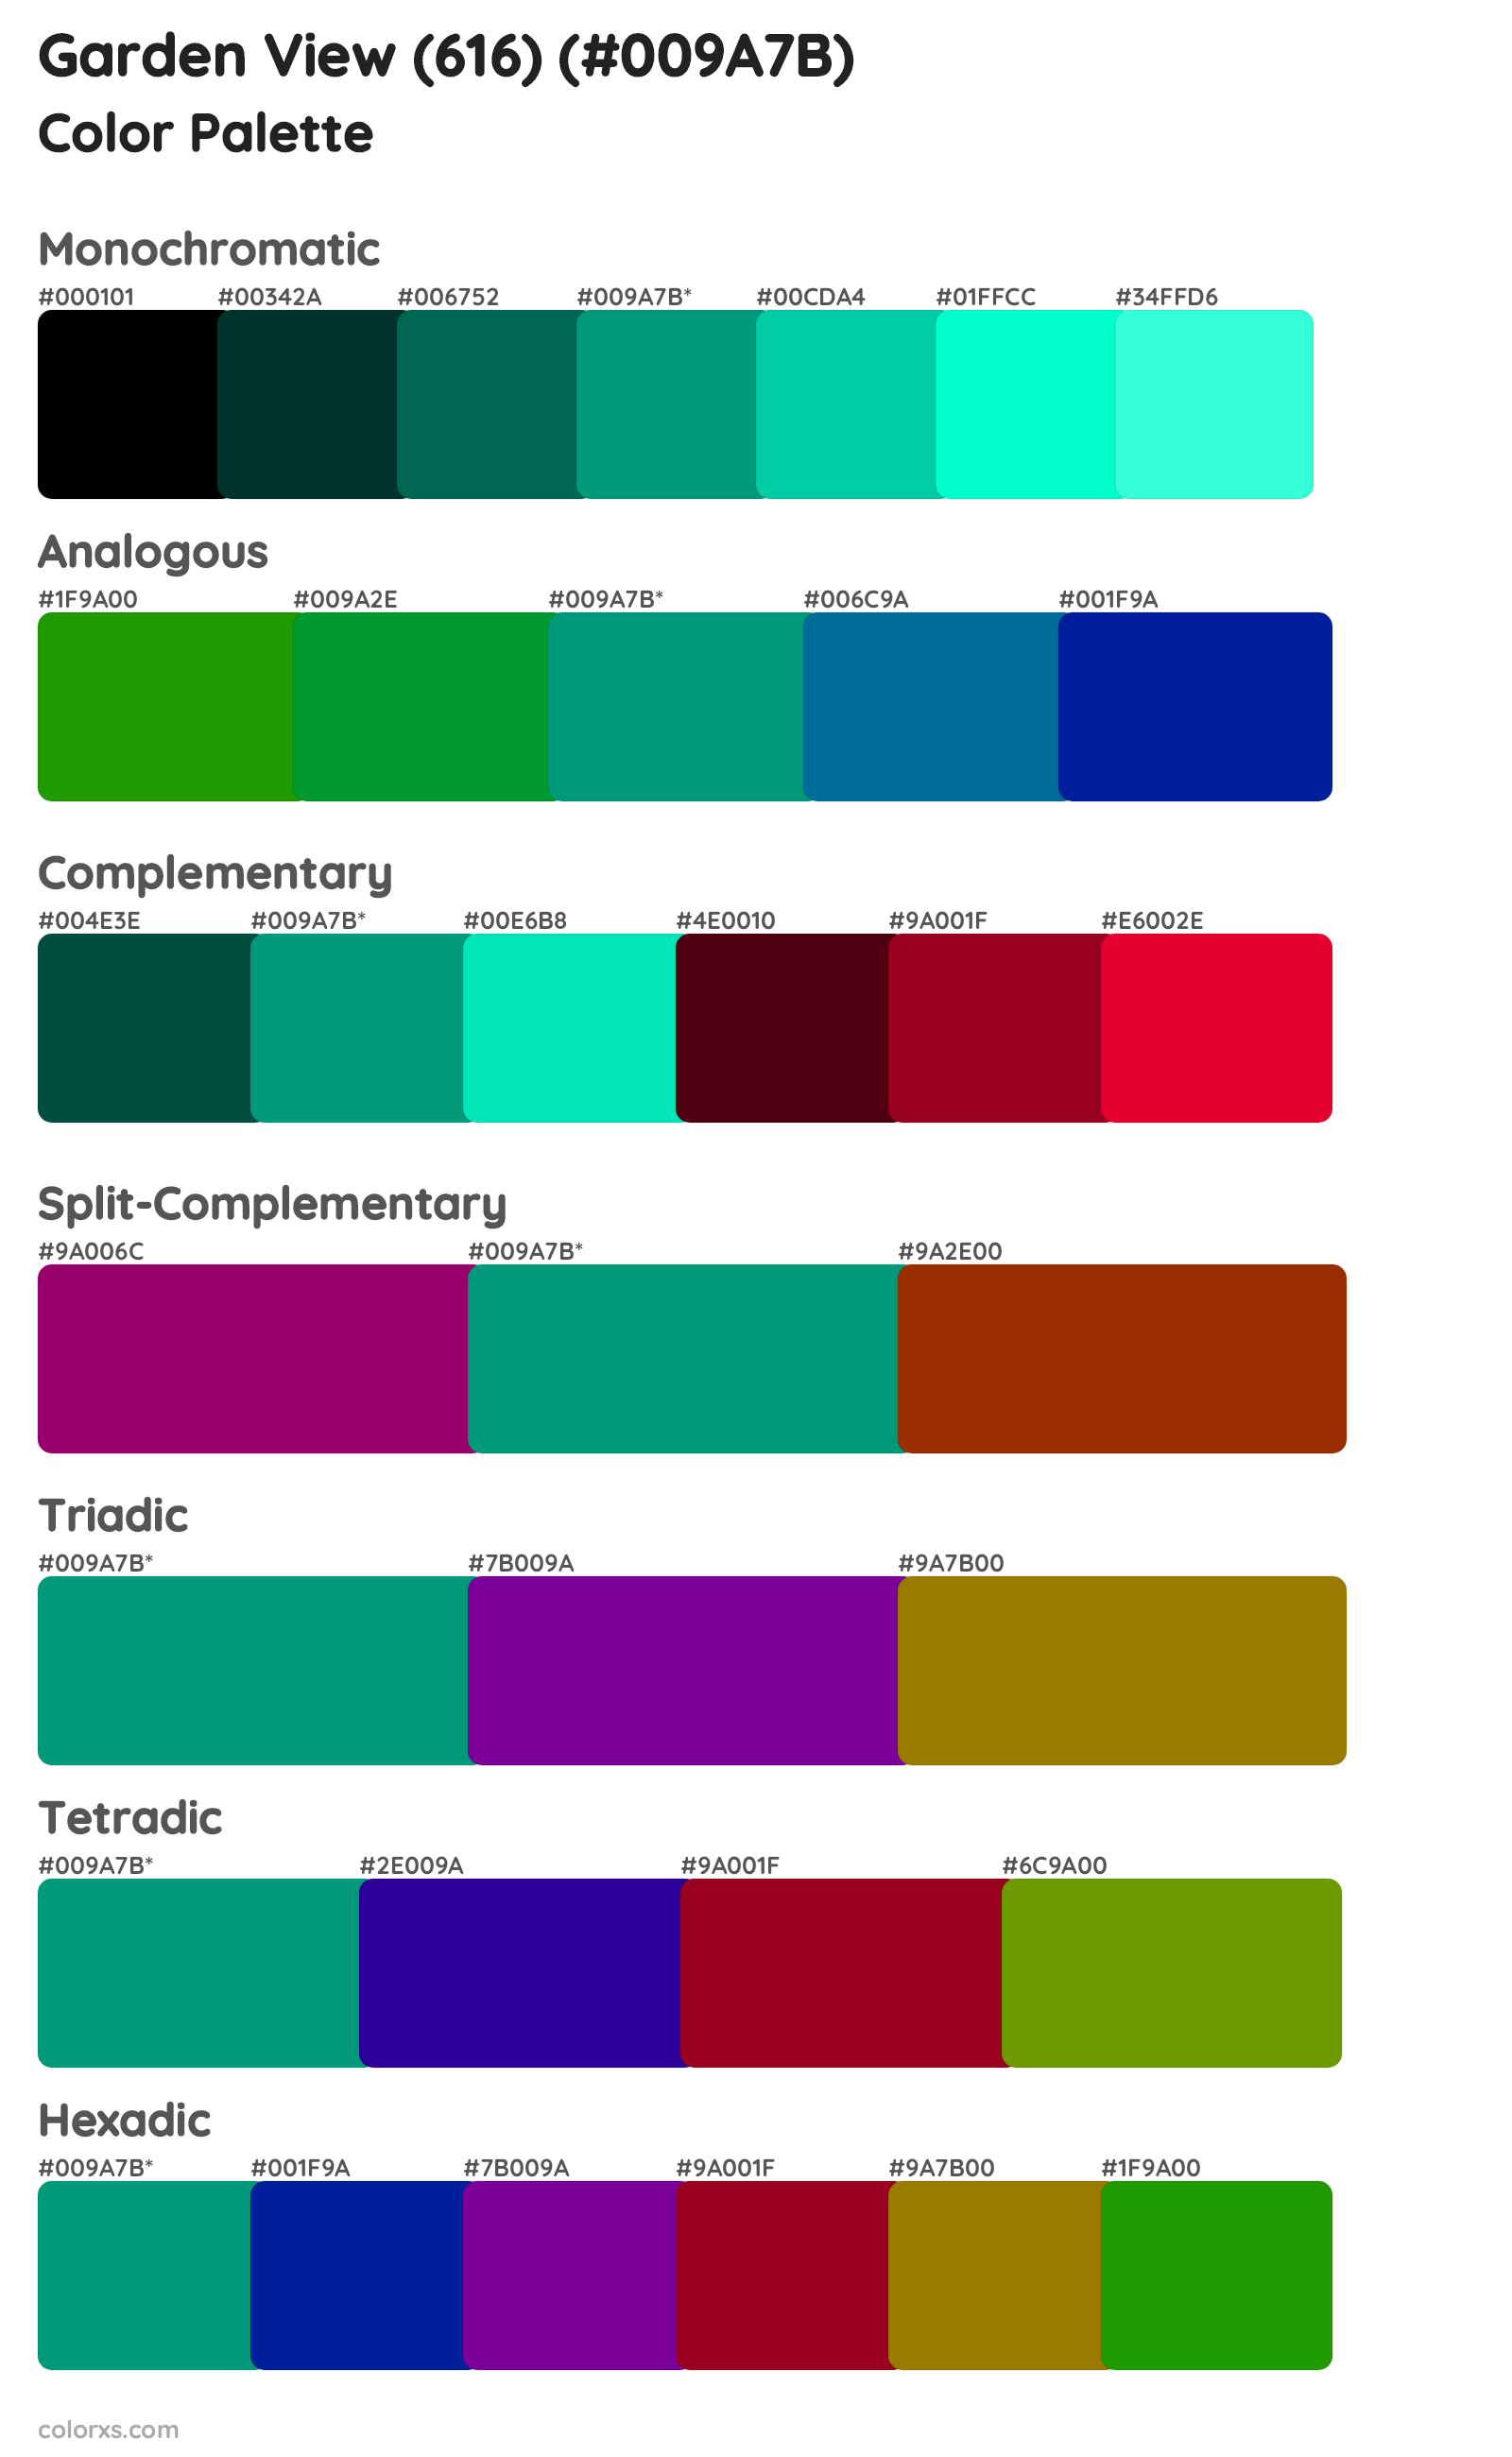 Garden View (616) Color Scheme Palettes